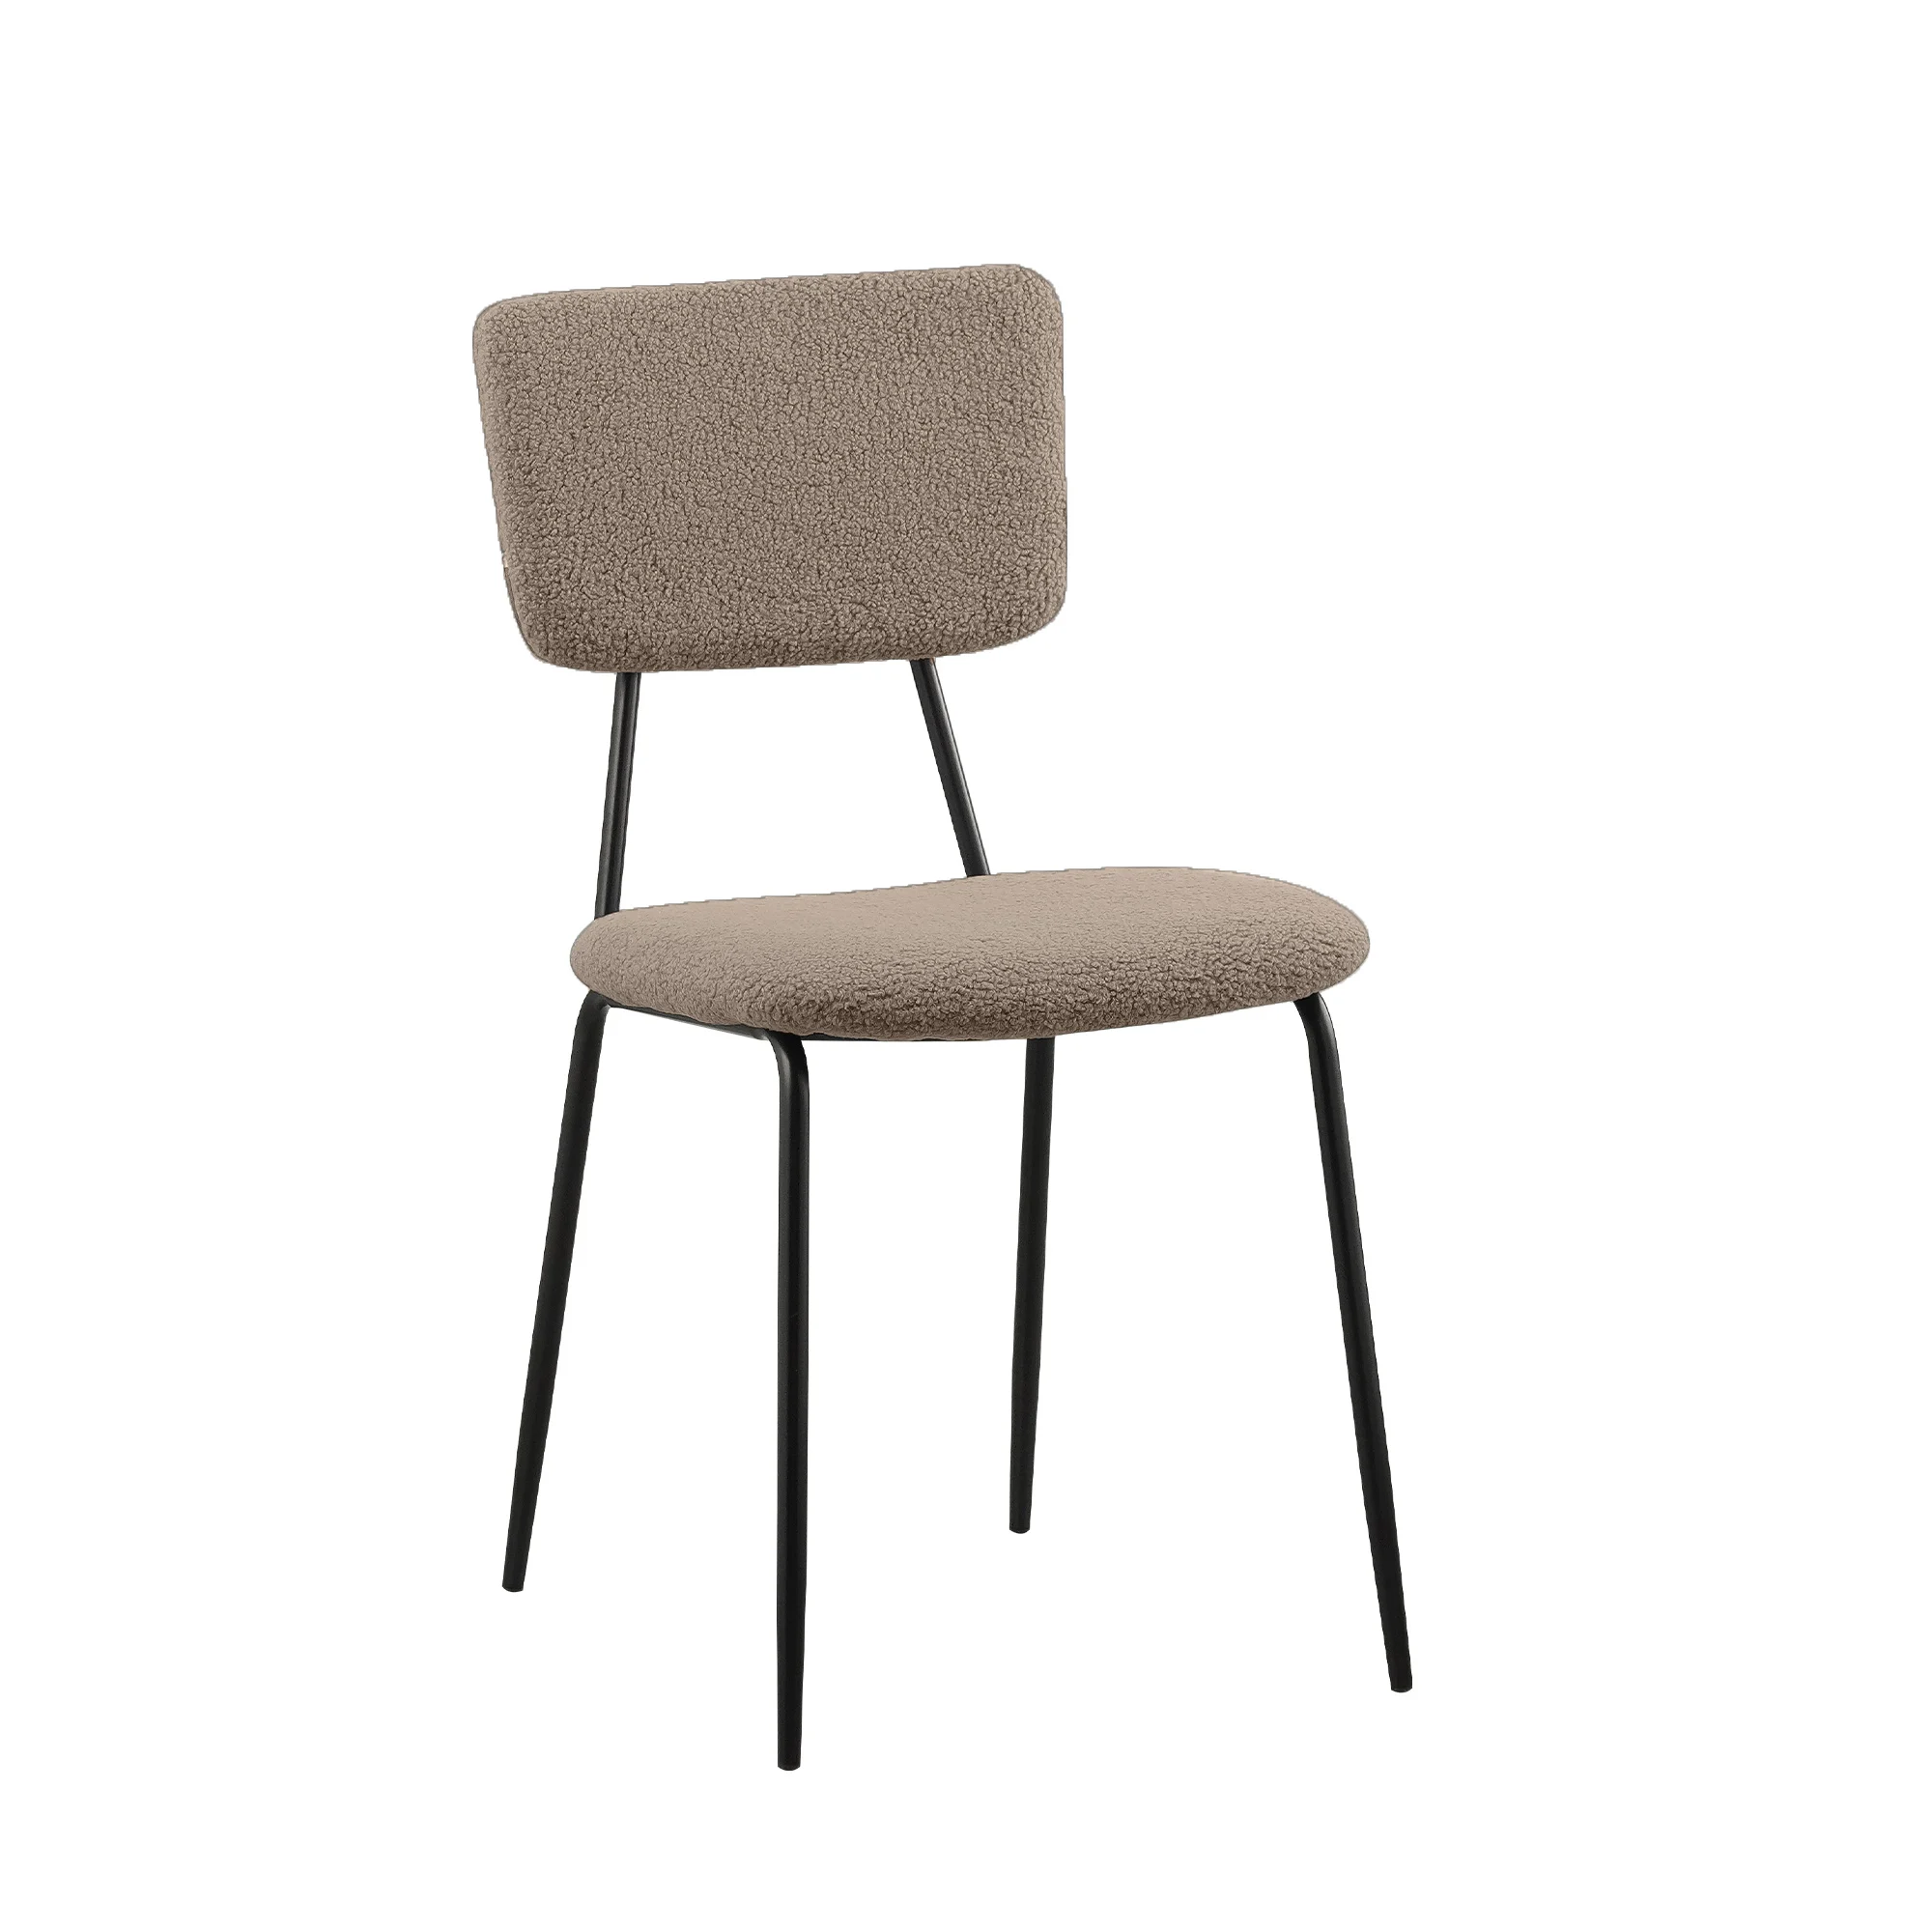 Набор из 6 стульев для столовой, удобные функциональные стулья со спинкой, обитой искусственным плюшем, и хромированными ножками, кухонные приставные стулья 5